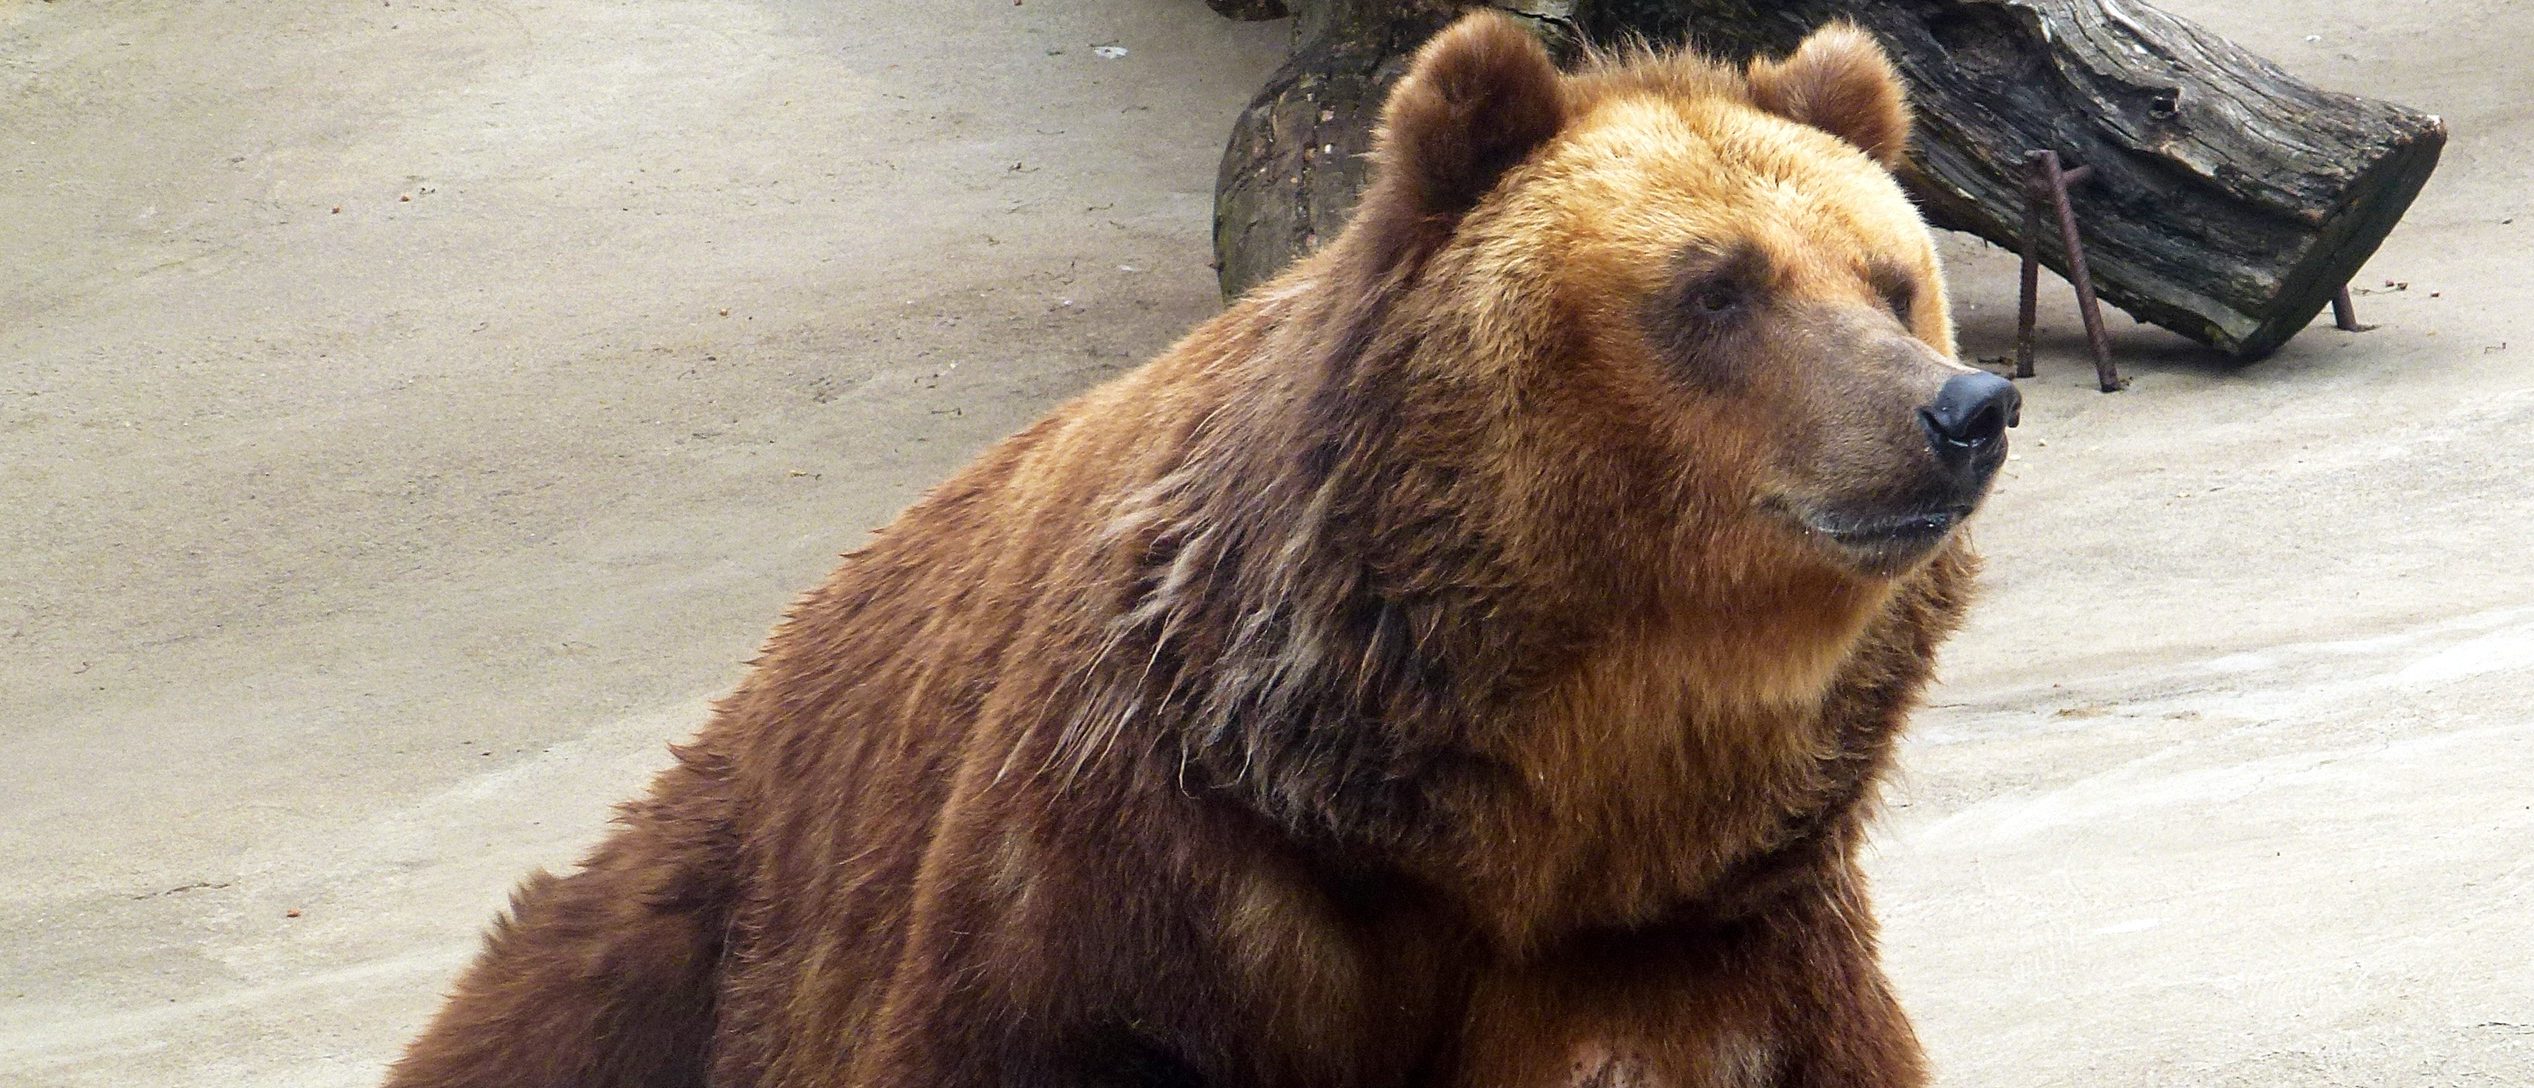 Добрых снов: медведи в Московском зоопарки отправились в зимний сон. Фото предоставили в пресс-службе Московского зоопарка